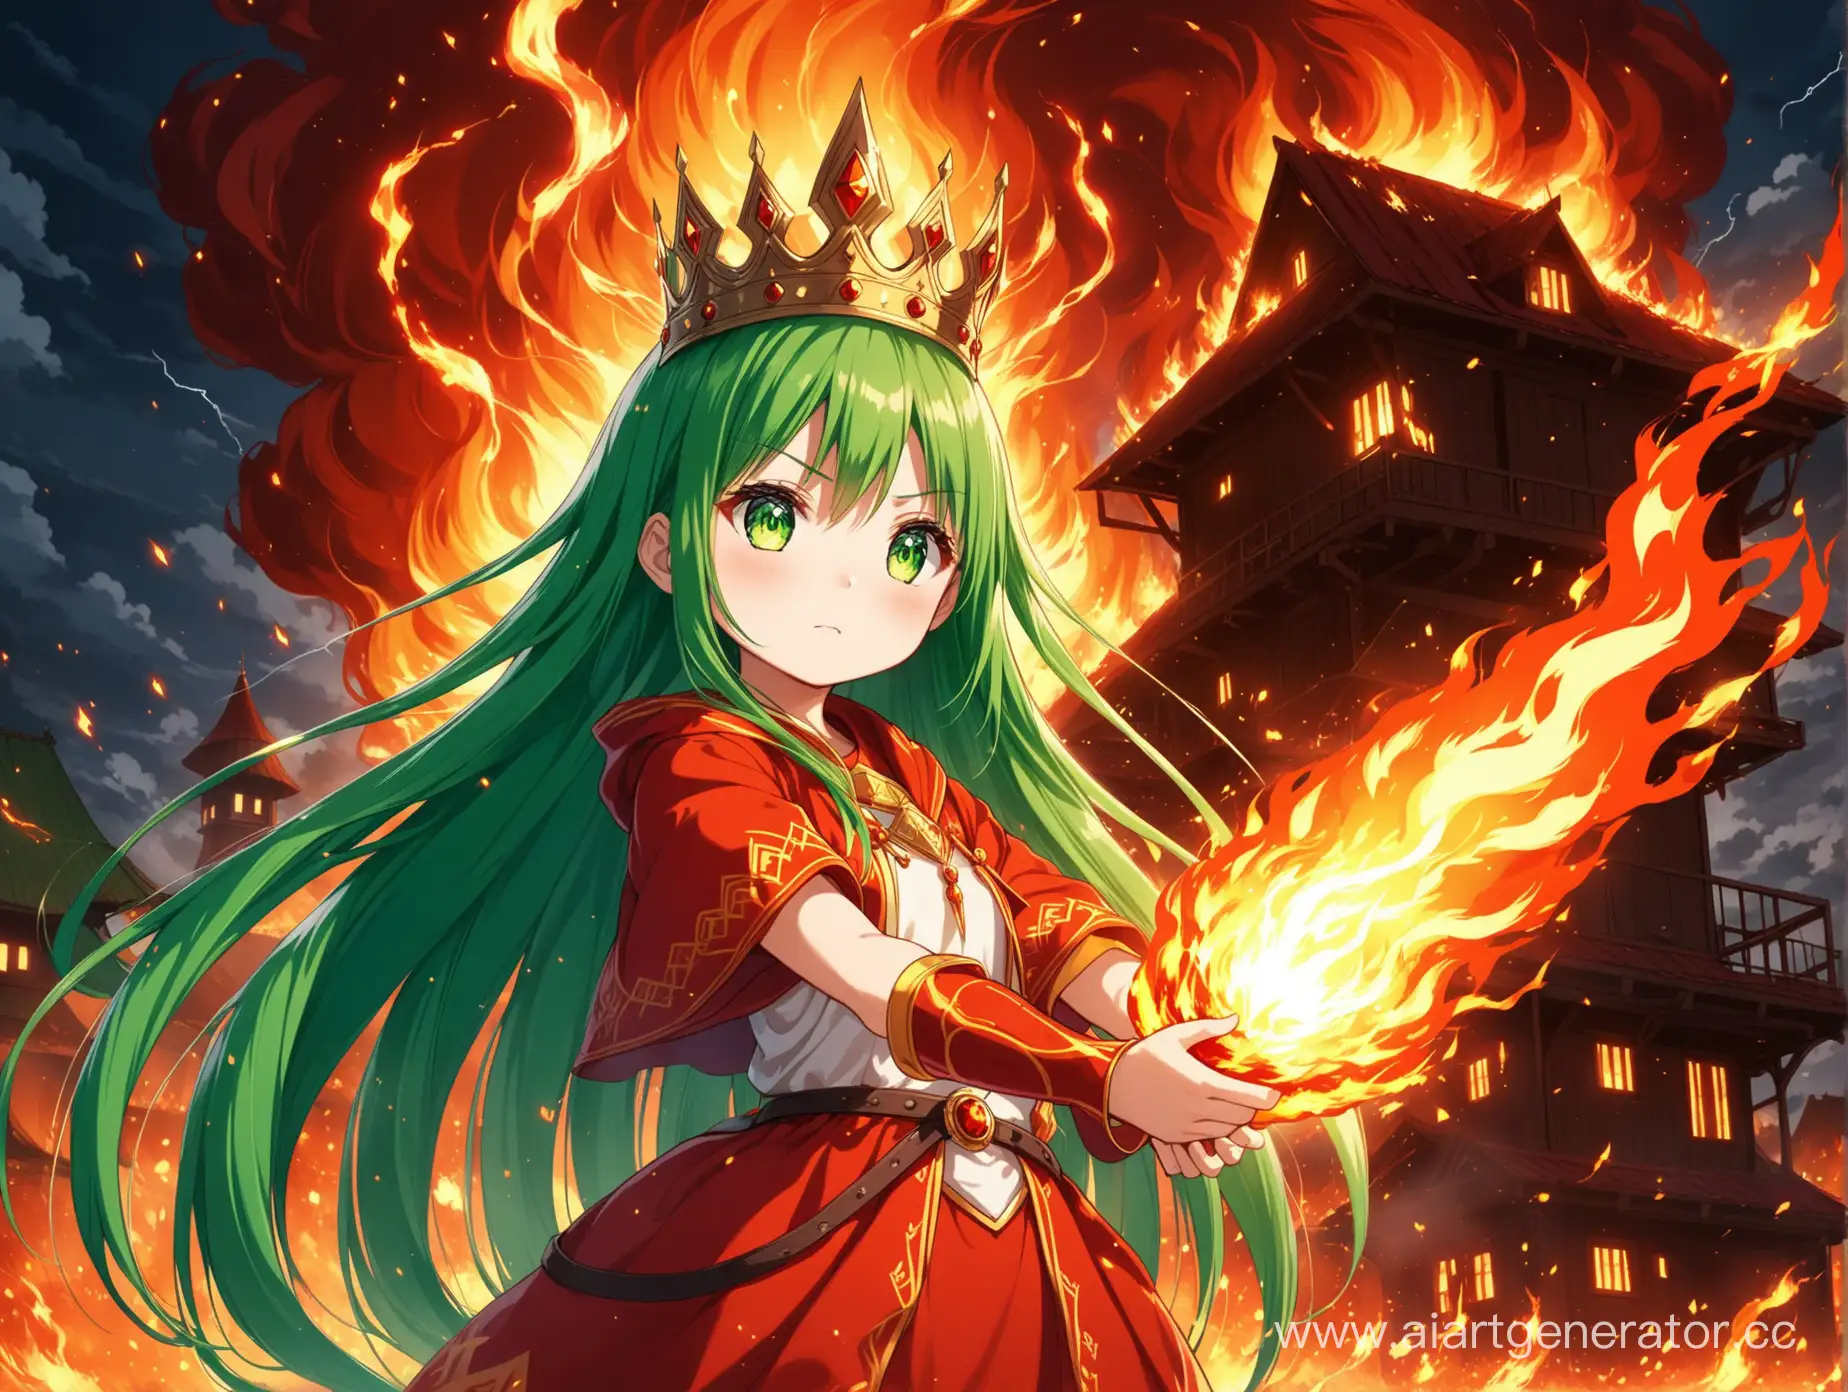 Аниме  очень красивая русская маленькая девочка с длинным прямыми зелёными волосами с зелёными глазами с горящей короной на на голове богиня магии огня и молнии держит в руках огонь 🔥 в сильной ярости спасает дом 